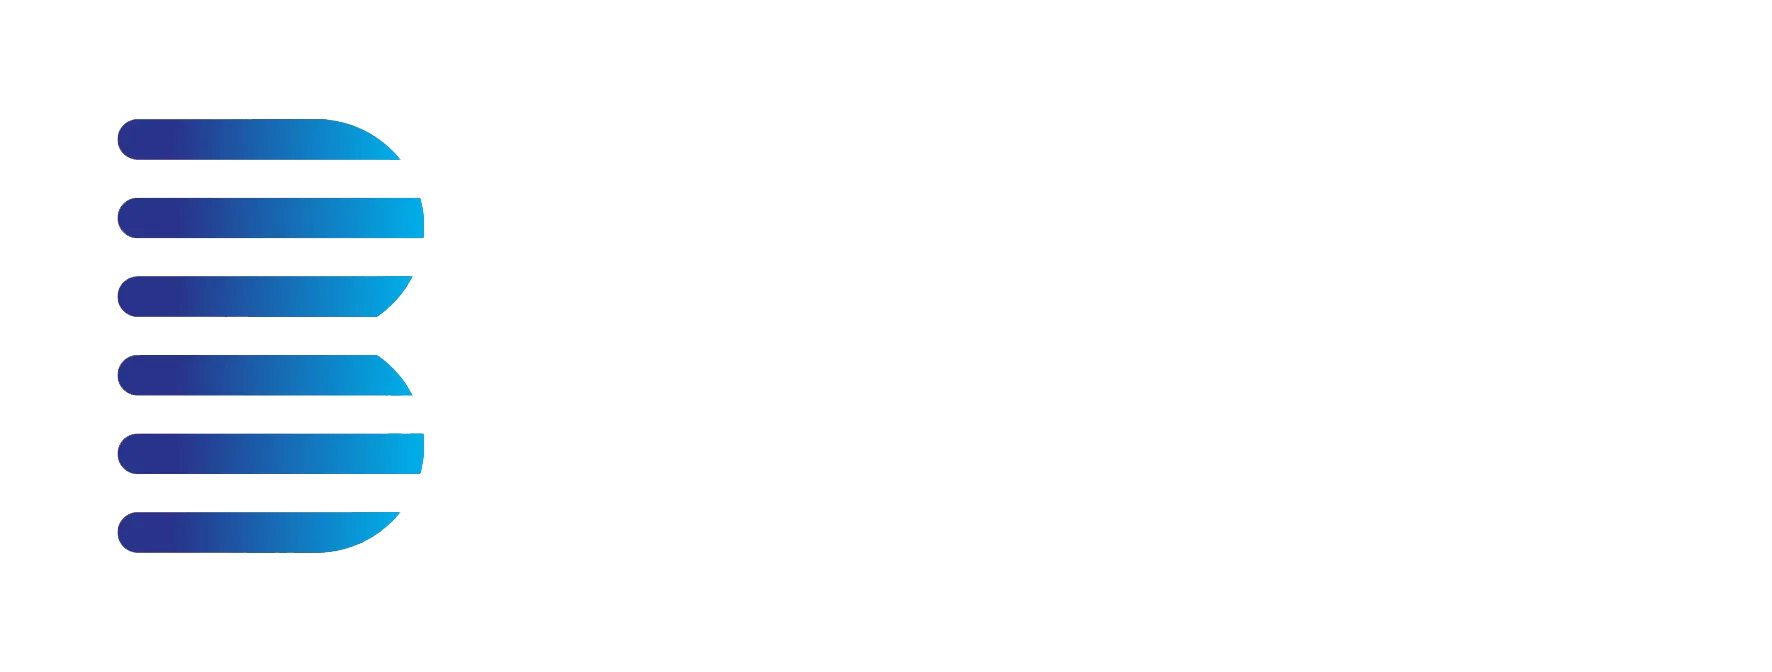 bluelight-commercial-white